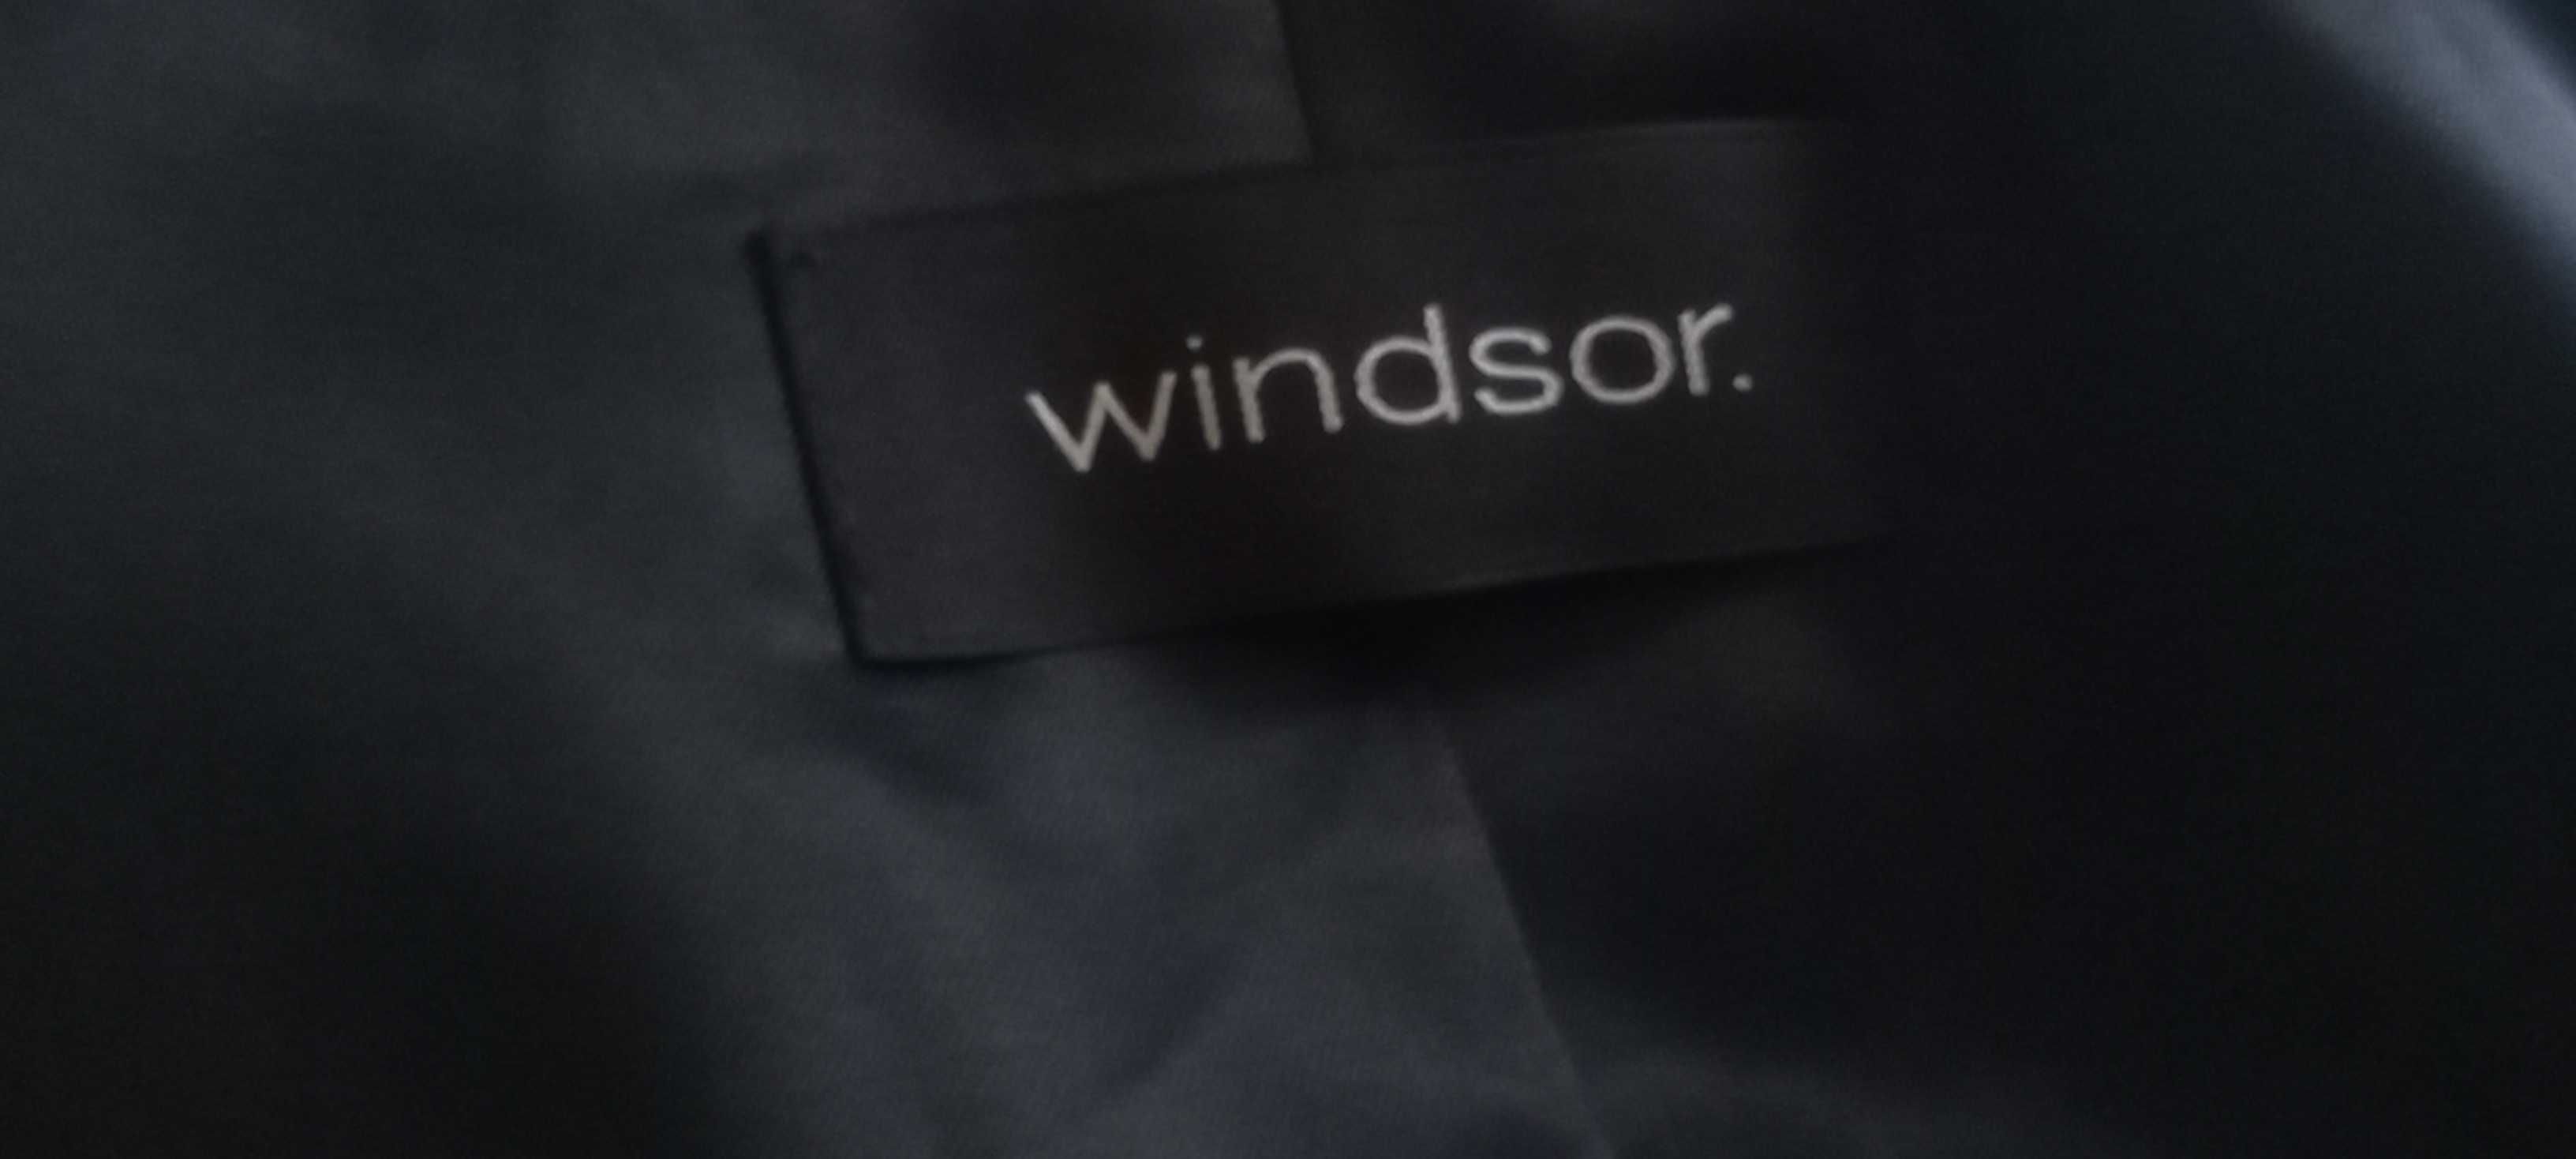 Żakiet Windsor. , marynarka 100% wool, 100 
 % wełna